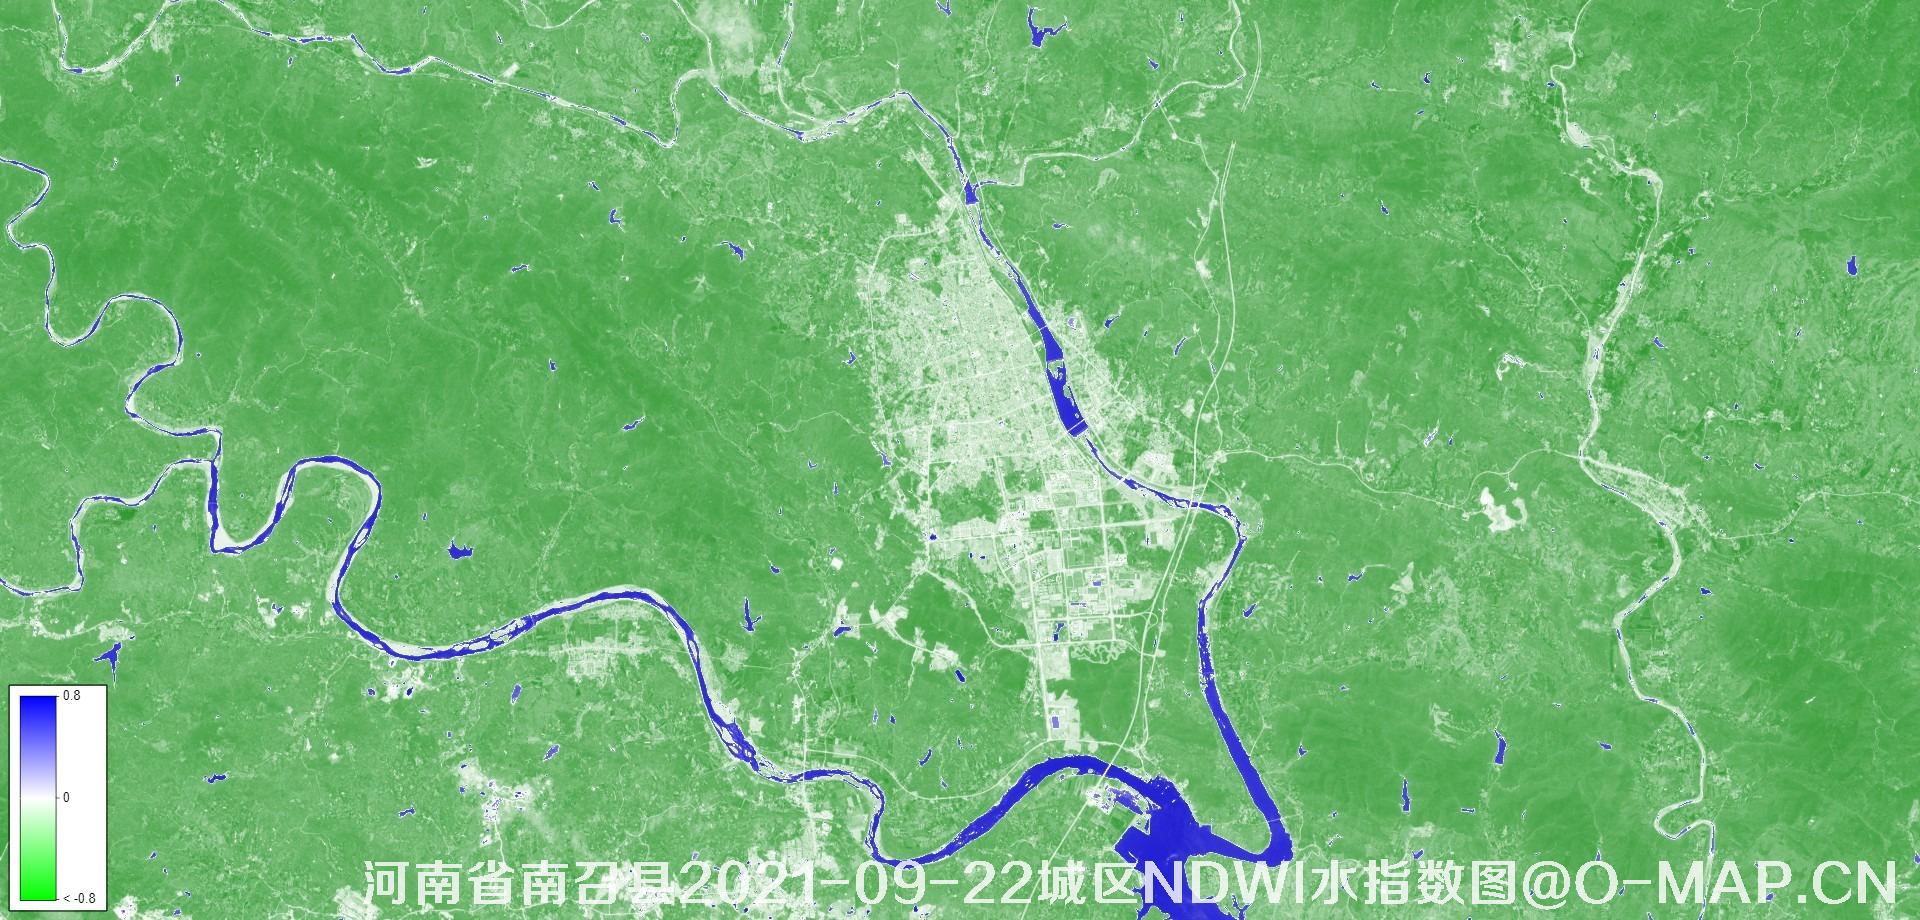 河南南阳市南召县2021-09-22城区NDWI水指数图